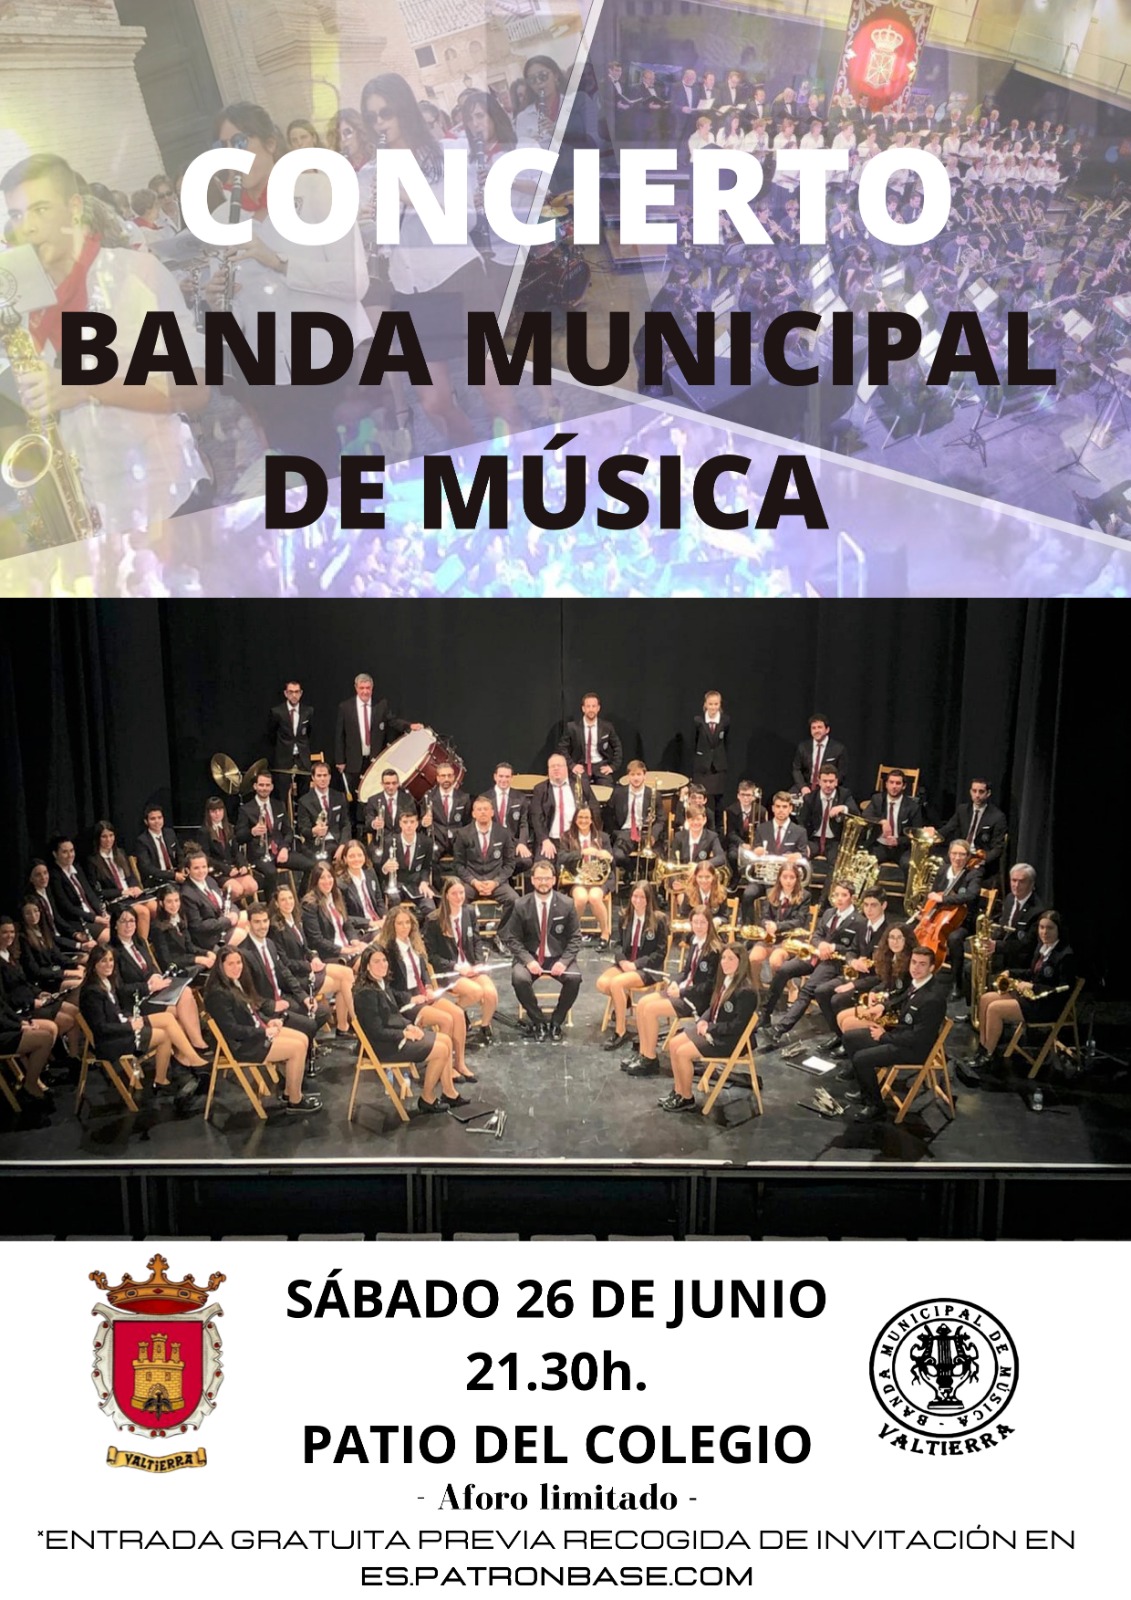 concierto banda de Musica Valtierra navarra agenda atrapa el norte